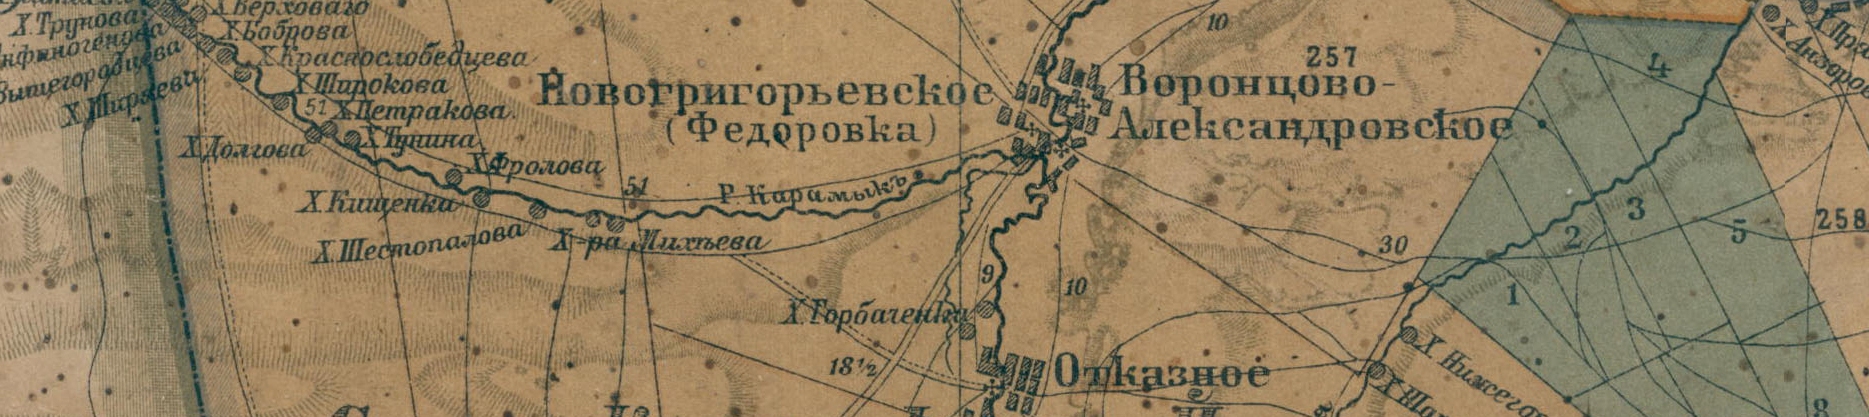 Зеленокумск на карте Ставропольской губернии 1896 10 вёрст (Н.Е. Никифораки)